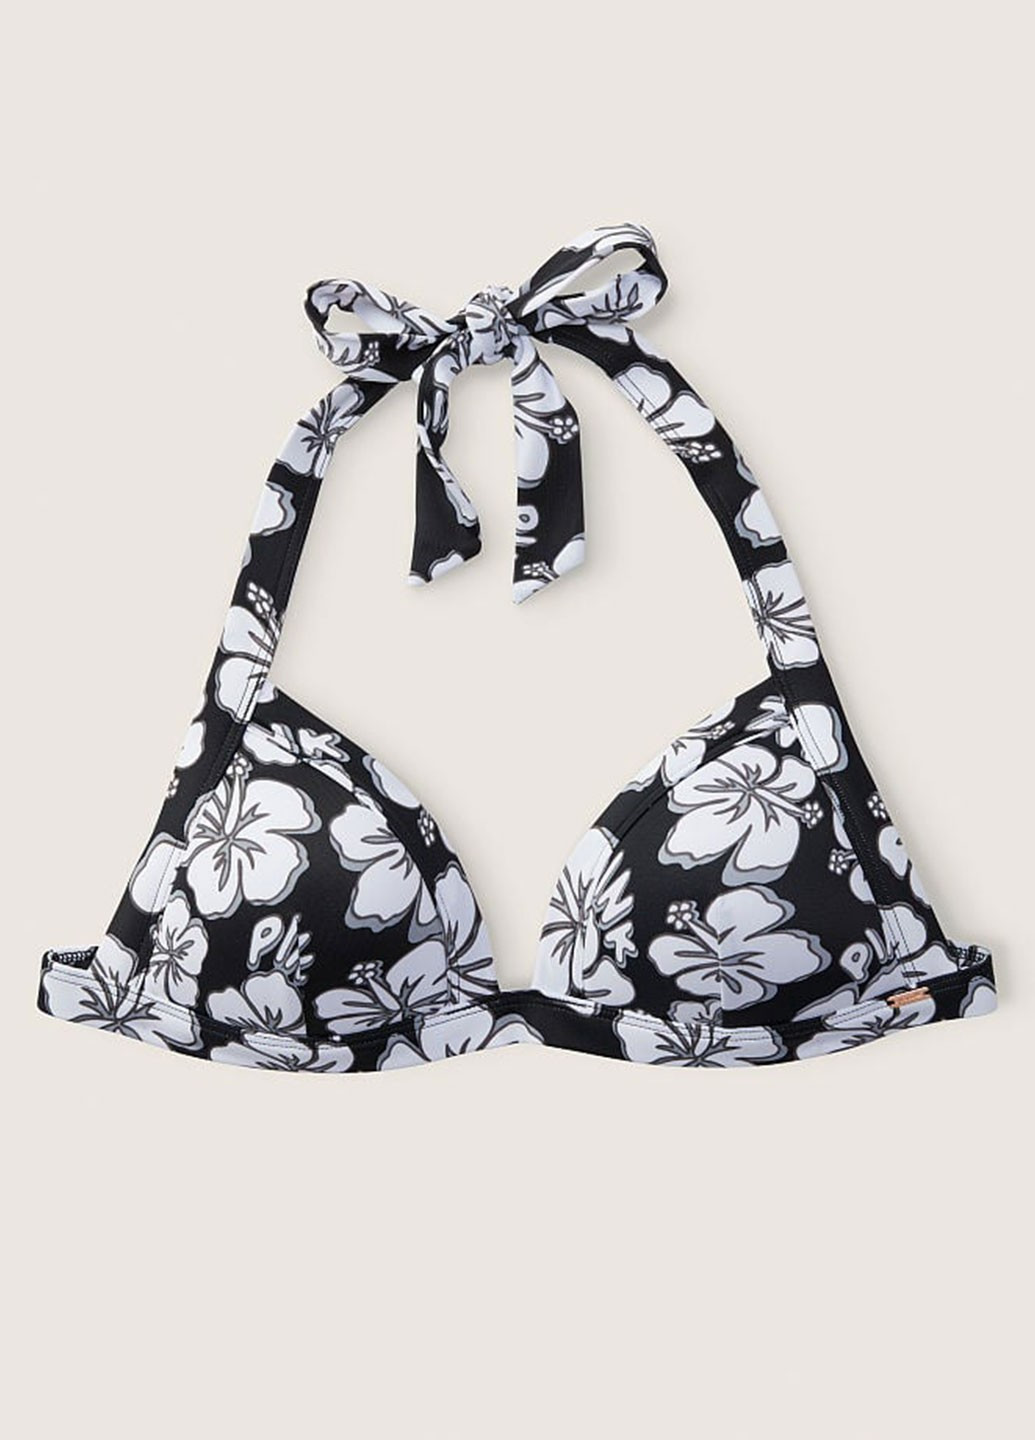 Черно-белый демисезонный купальник (лиф, трусики) раздельный, халтер Victoria's Secret